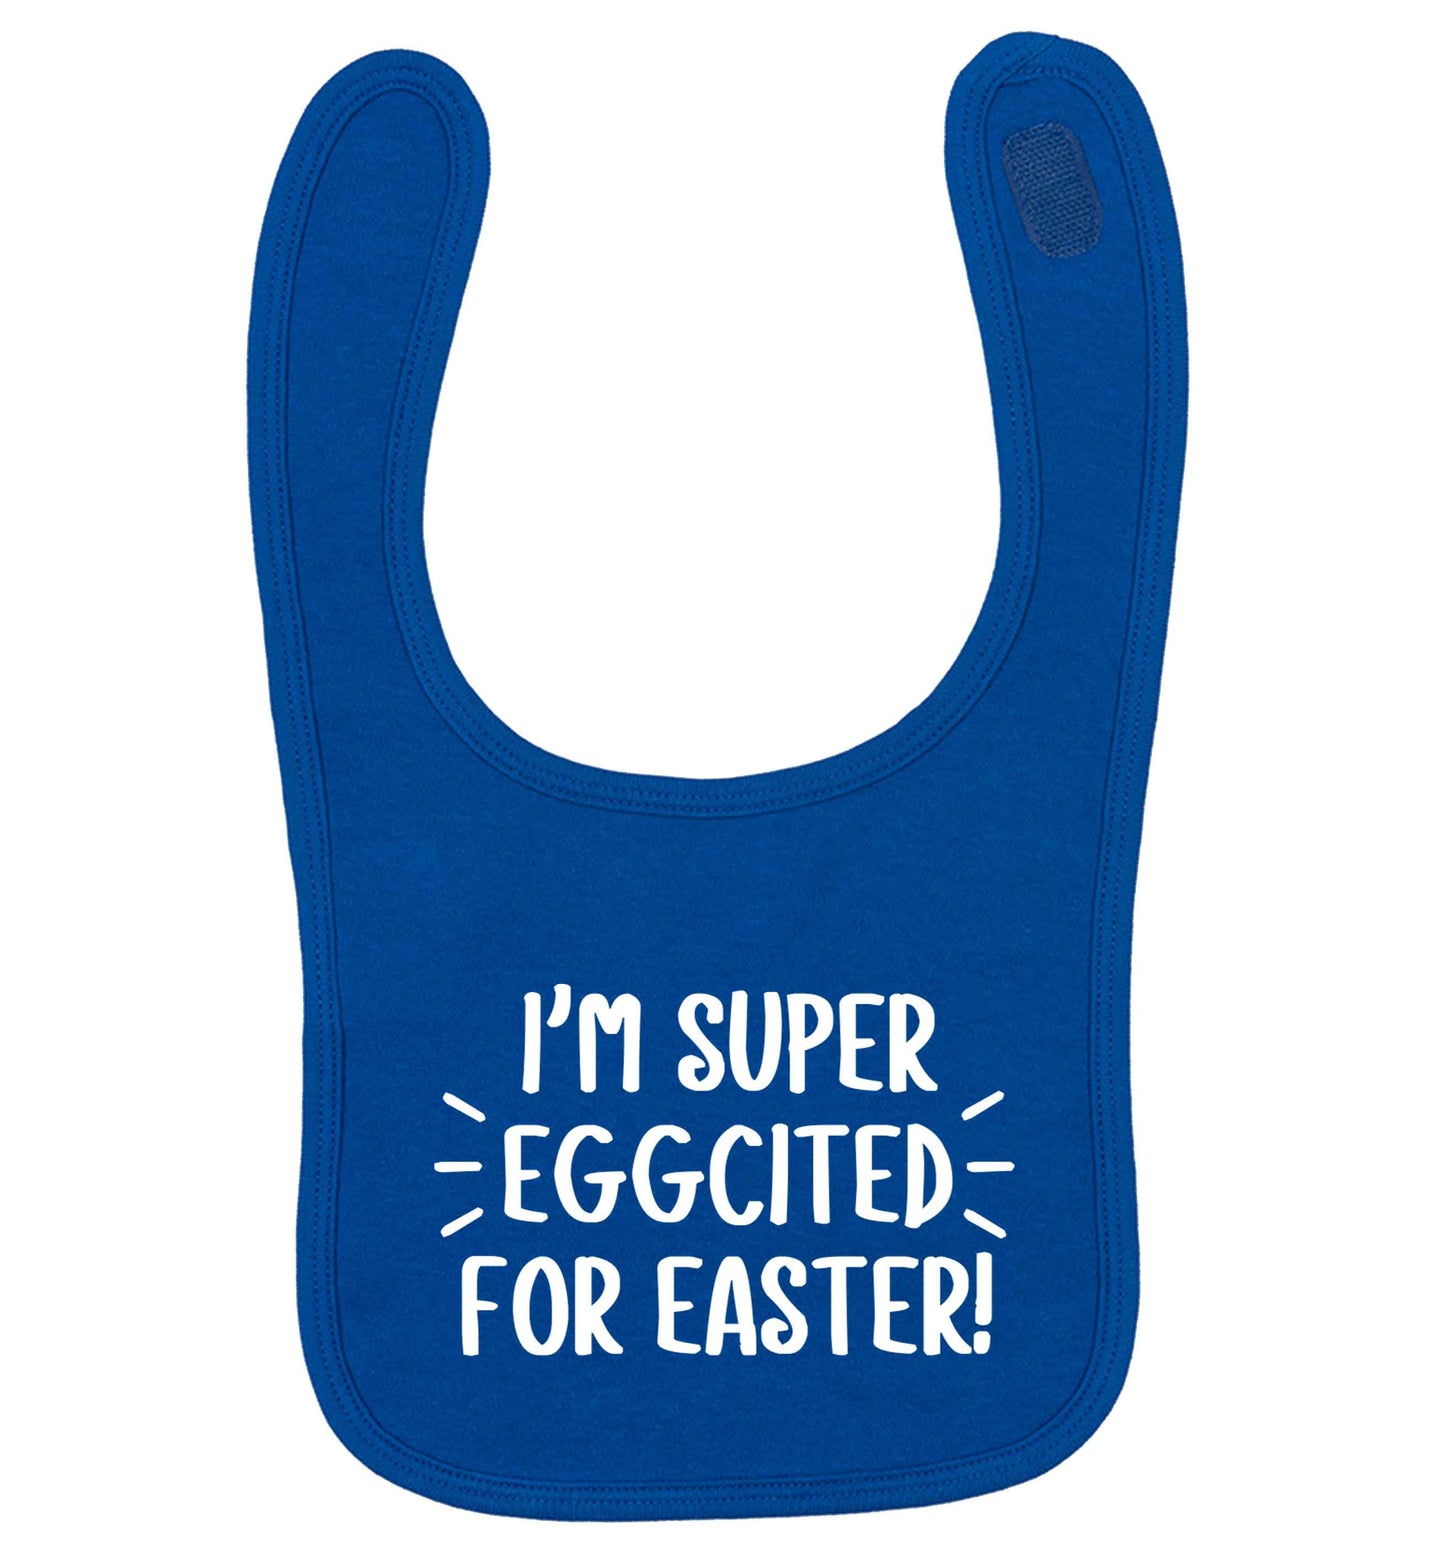 I'm super eggcited for Easter royal blue baby bib